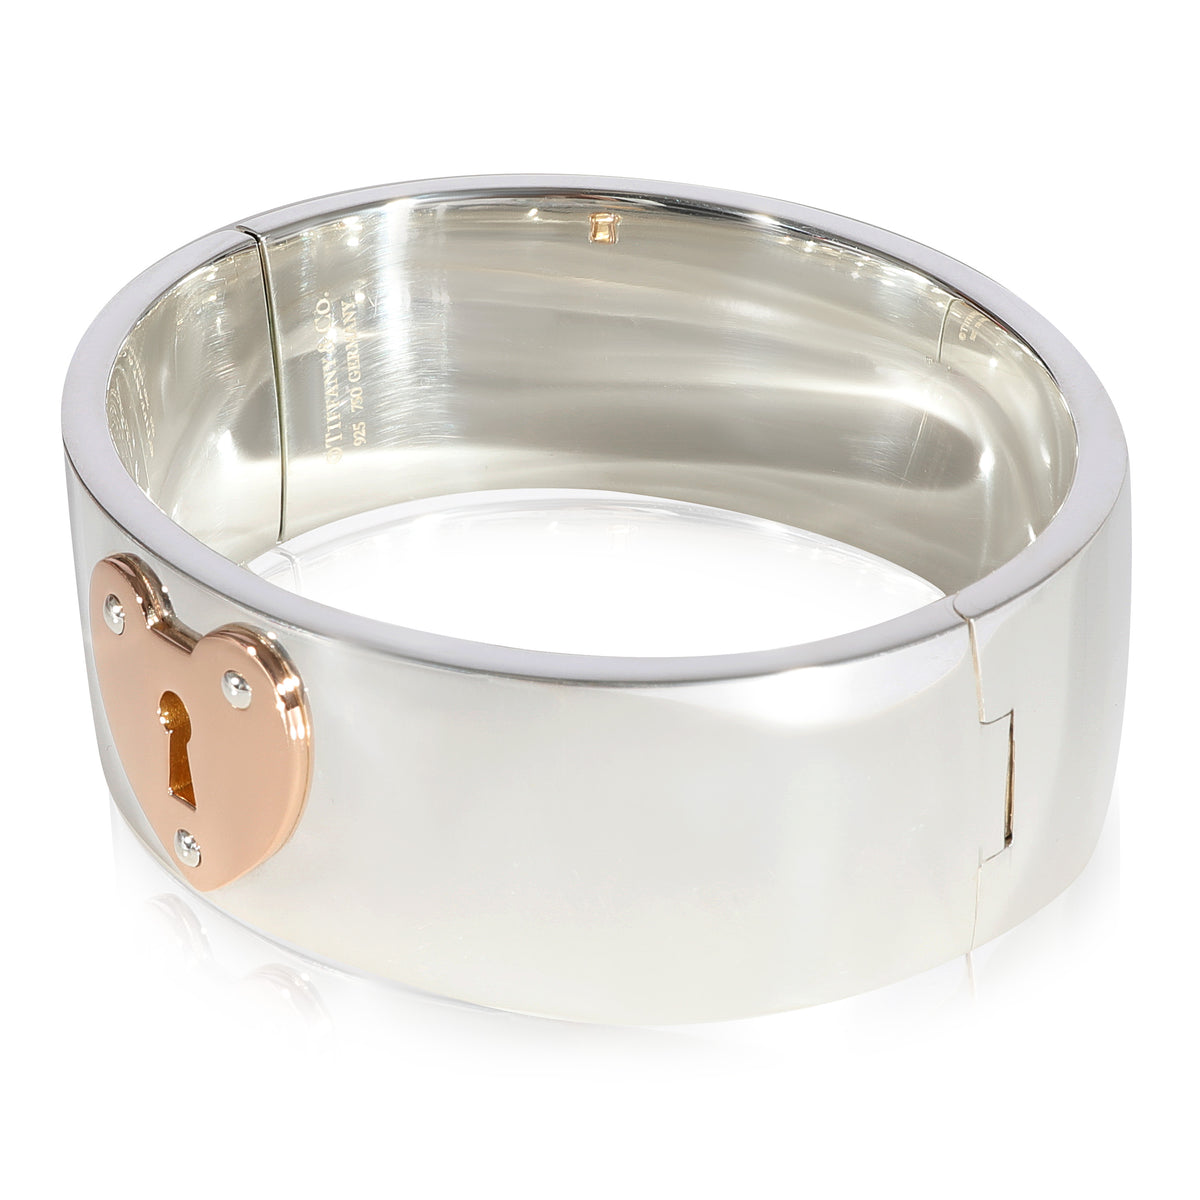 Tiffany & Co. Locks Heart Lock Bracelet in 18k Pink Gold/Sterling Silver